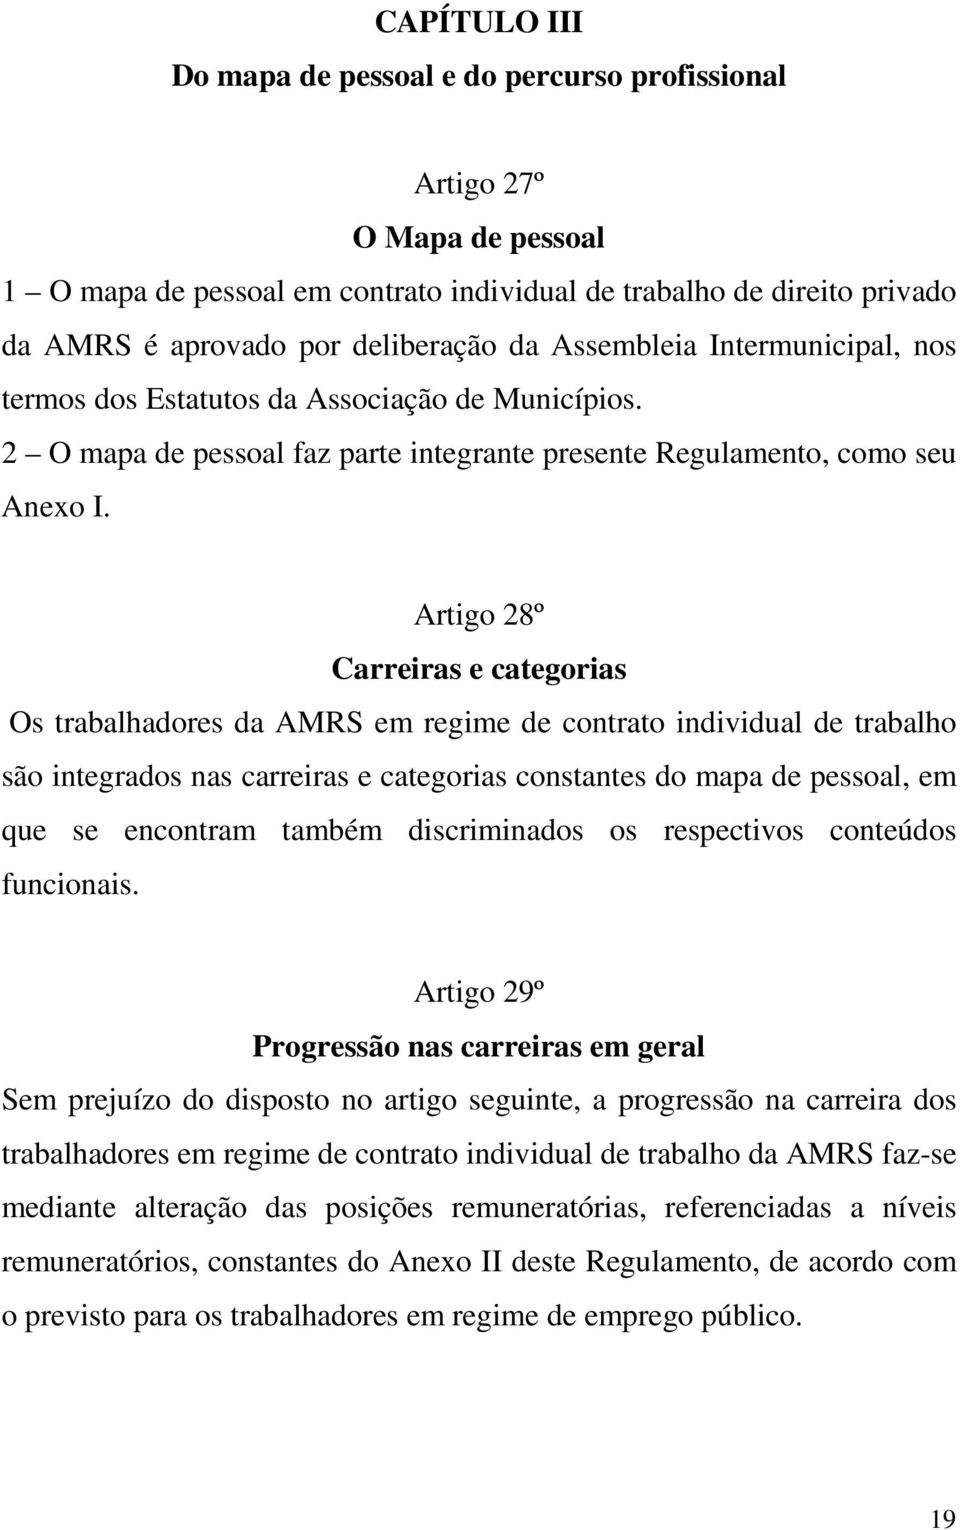 Artigo 28º Carreiras e categorias Os trabalhadores da AMRS em regime de contrato individual de trabalho são integrados nas carreiras e categorias constantes do mapa de pessoal, em que se encontram